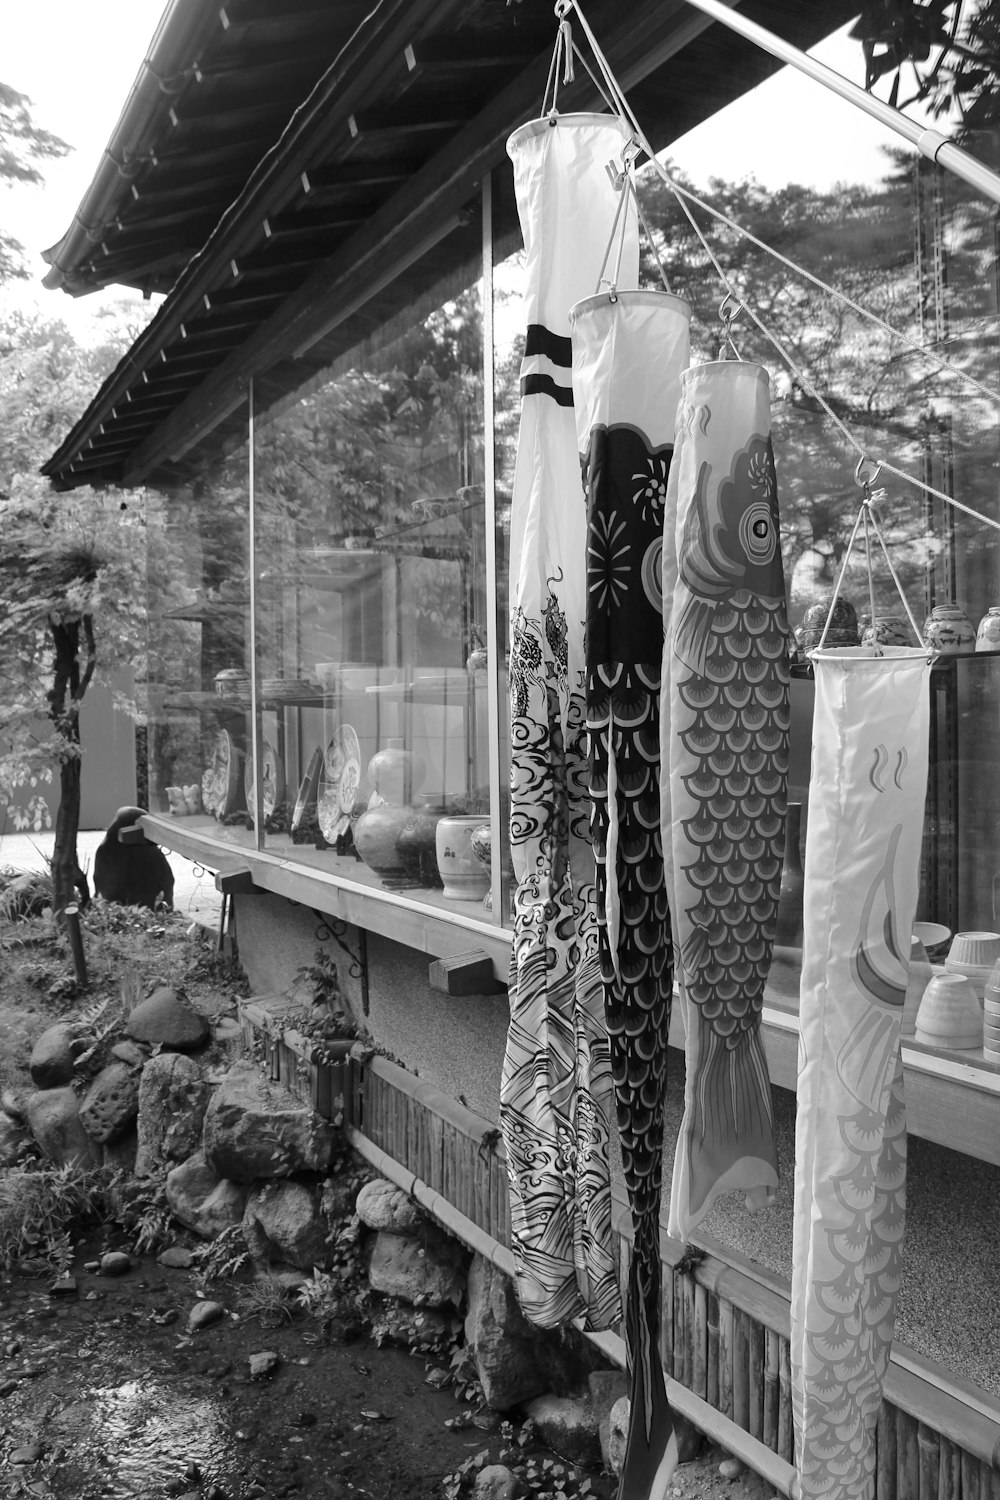 Una foto en blanco y negro del frente de una tienda